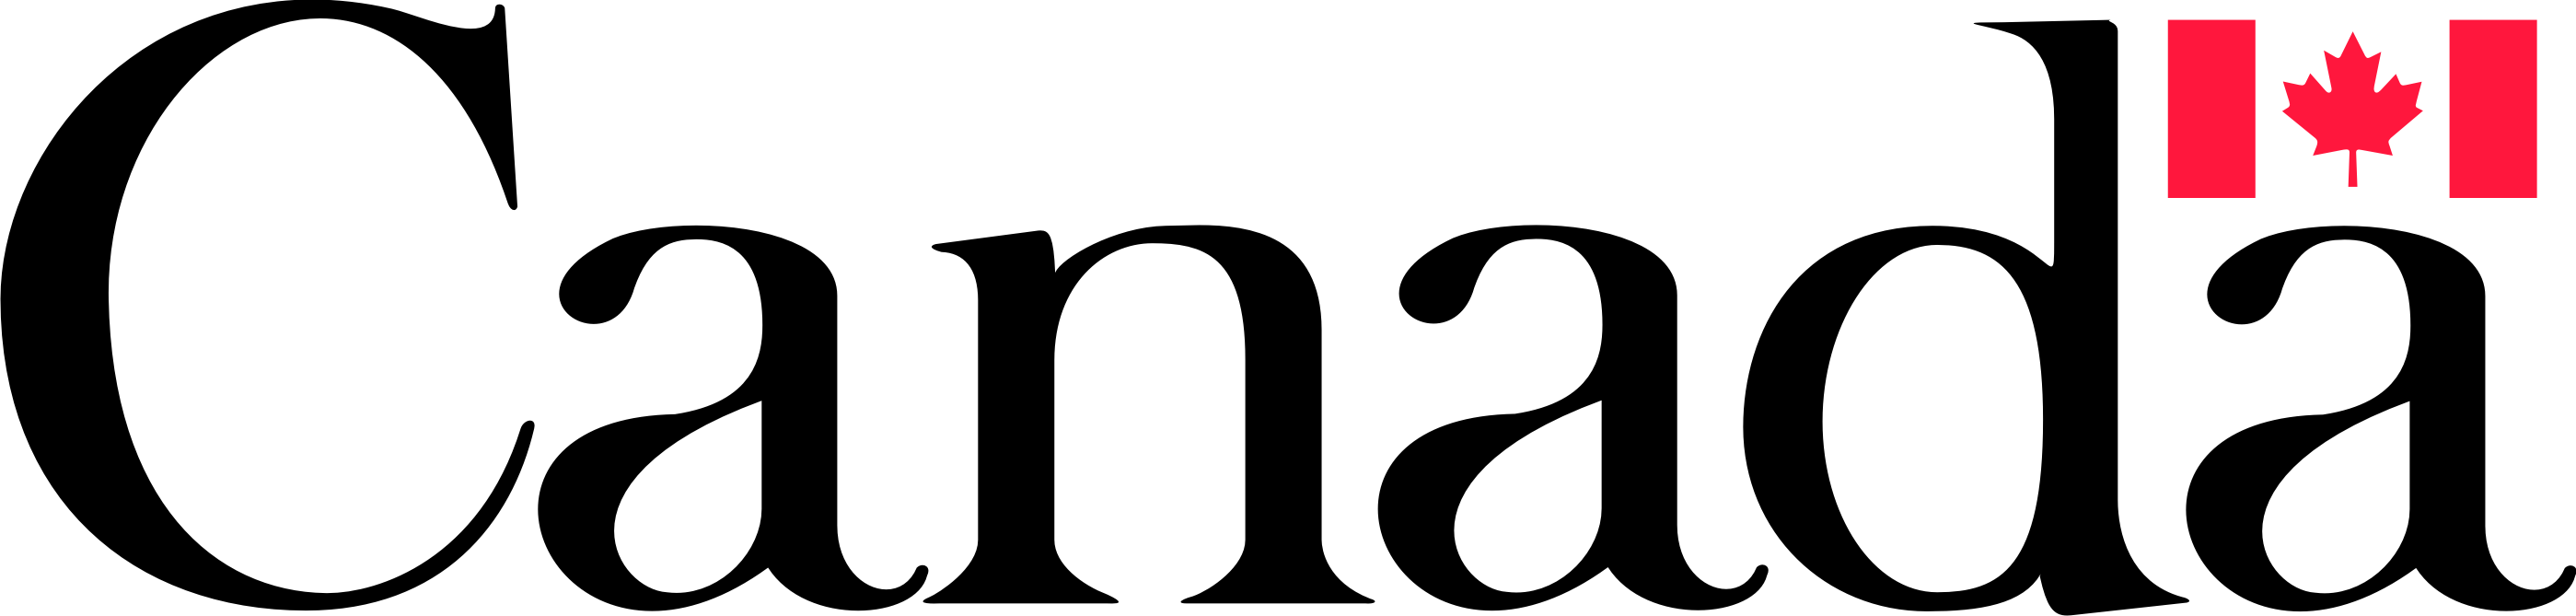 logo gouvernement canadien